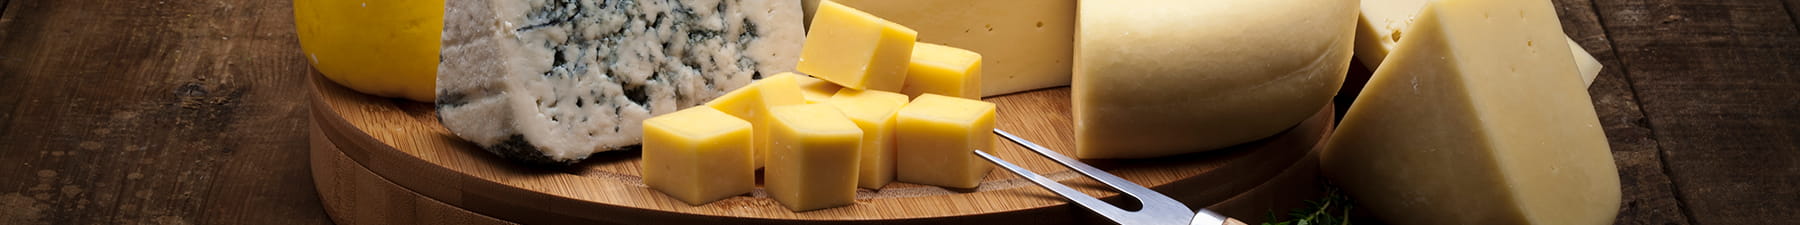 圆木板上的各种奶酪